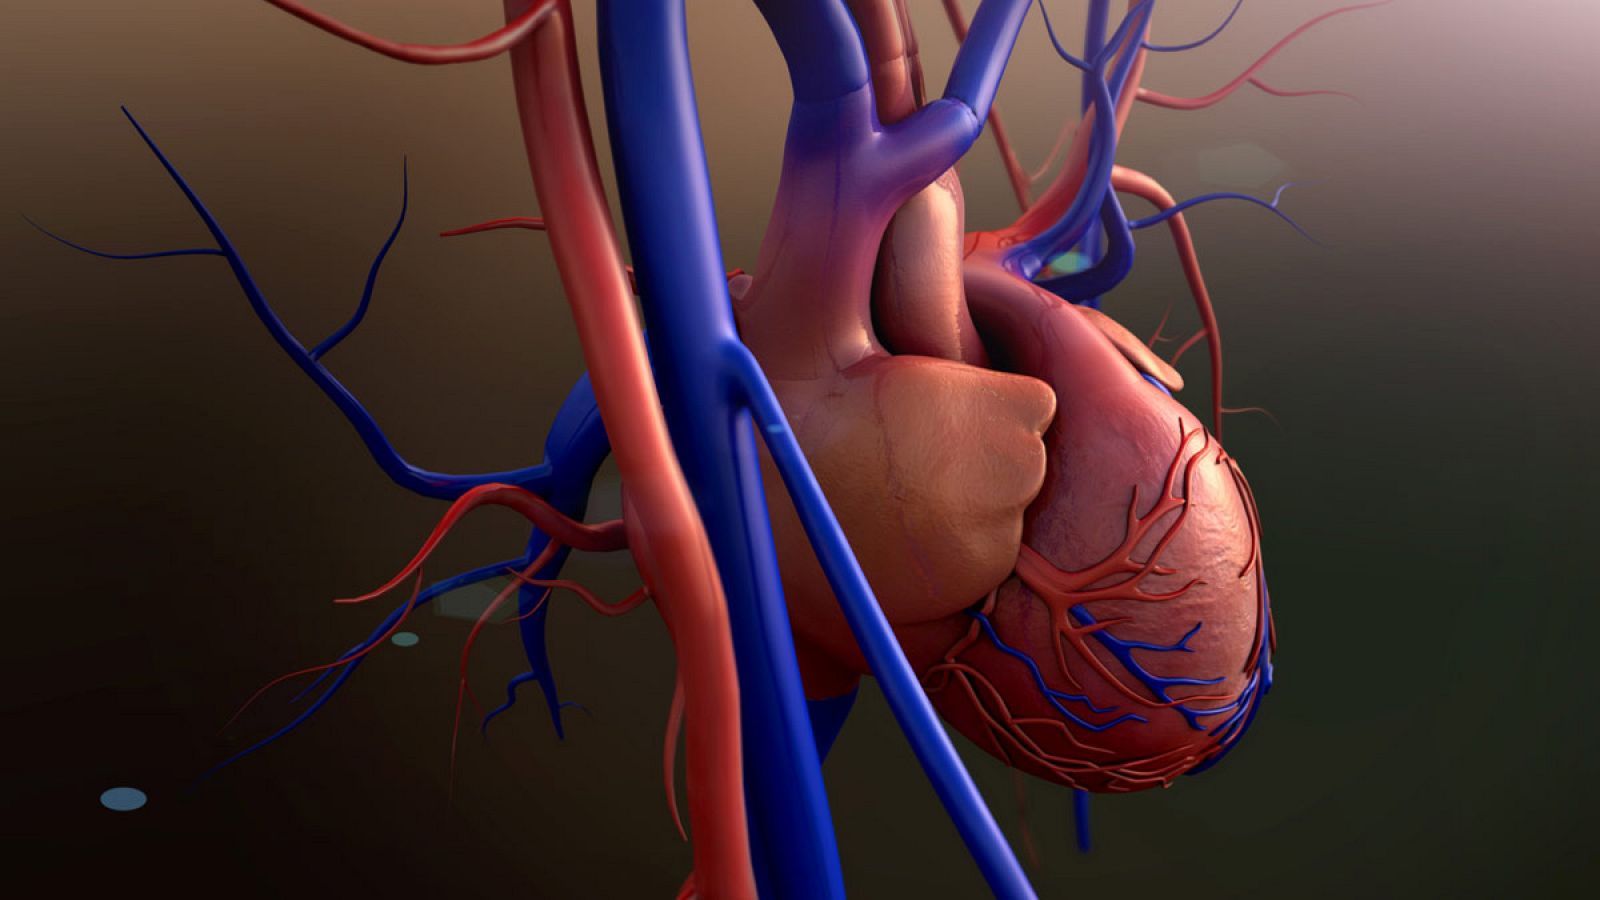 Ilustración de un corazón y las venas y arterias que entran y salen de él.